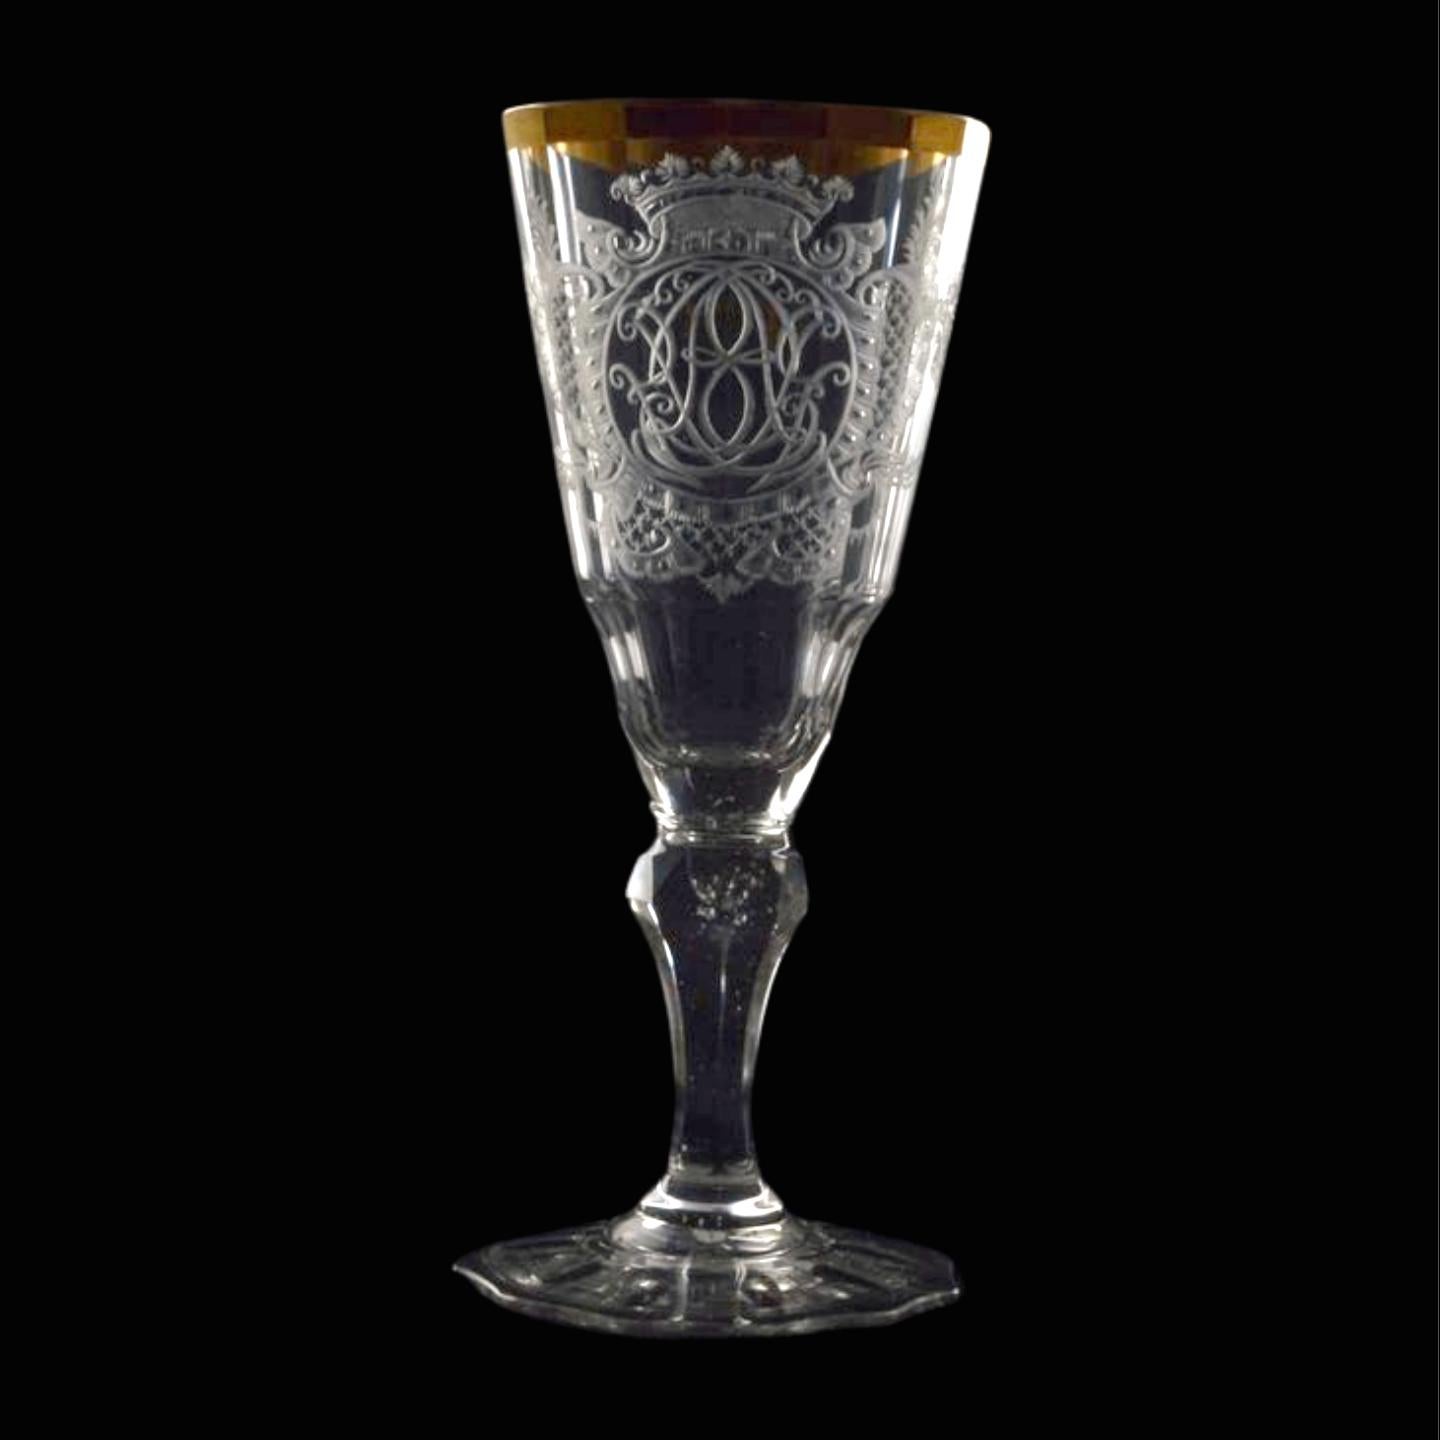 Un magnifique verre à vin conique avec une gravure élaborée comprenant un Monogramme sous une couronne, et un bord doré.


Le verre de Warmbrunn, également appelé verre de Warmbrunner, désigne un type de verrerie originaire de la région de Warmbrunn